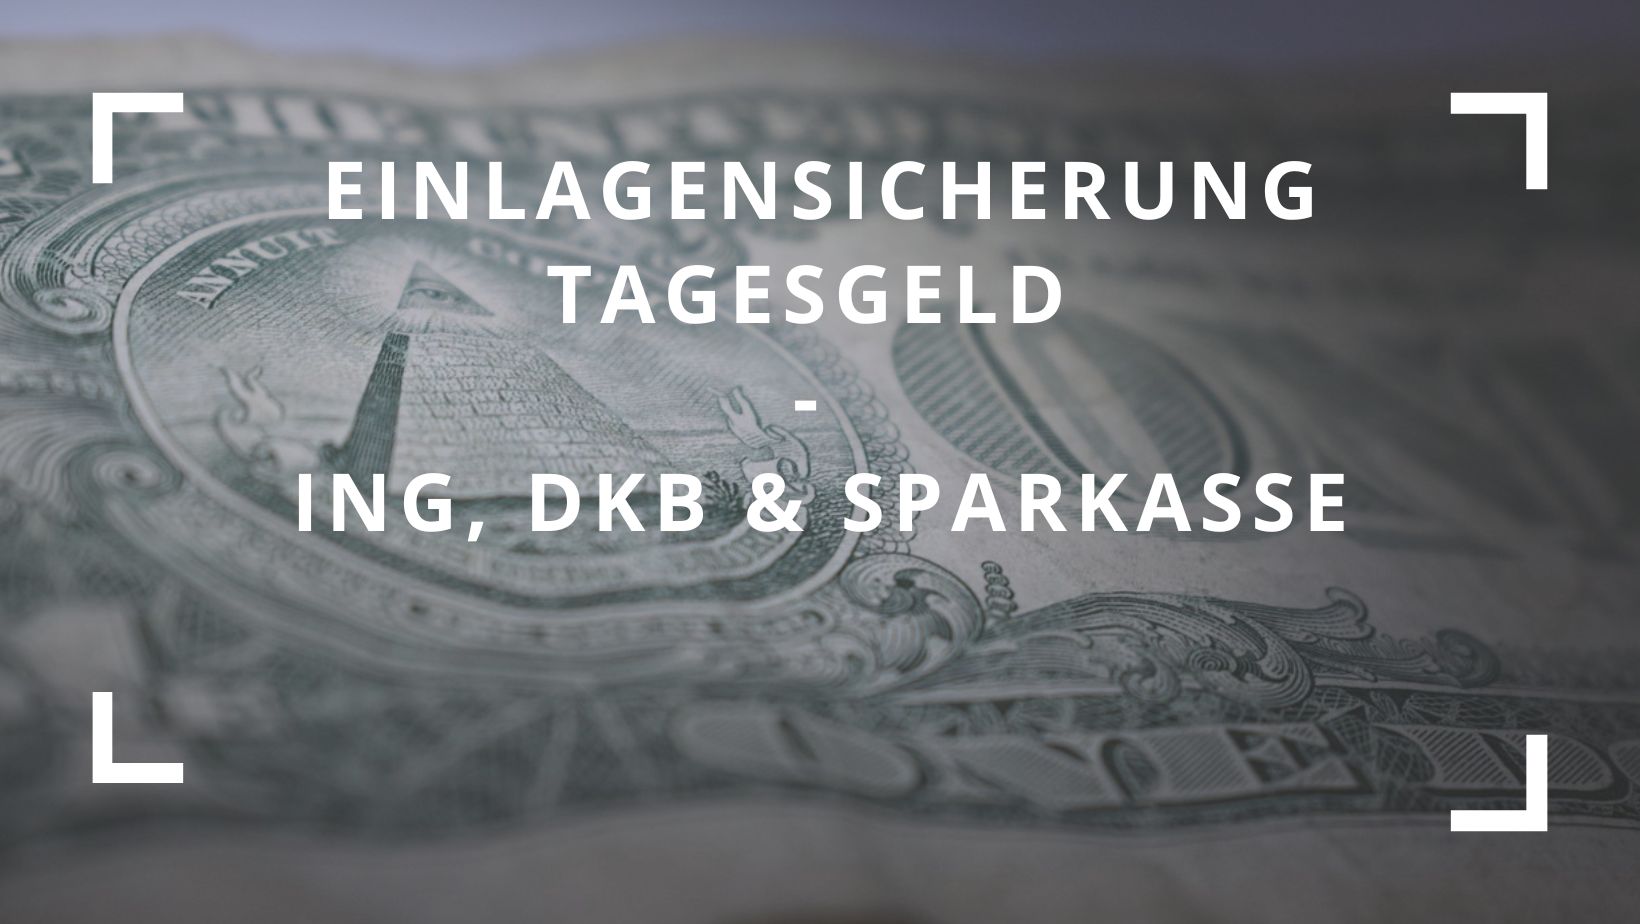 Titelbild zum Blogbeitrag "Einlagensicherung Tagesgeld ING, DKB & Sparkasse"